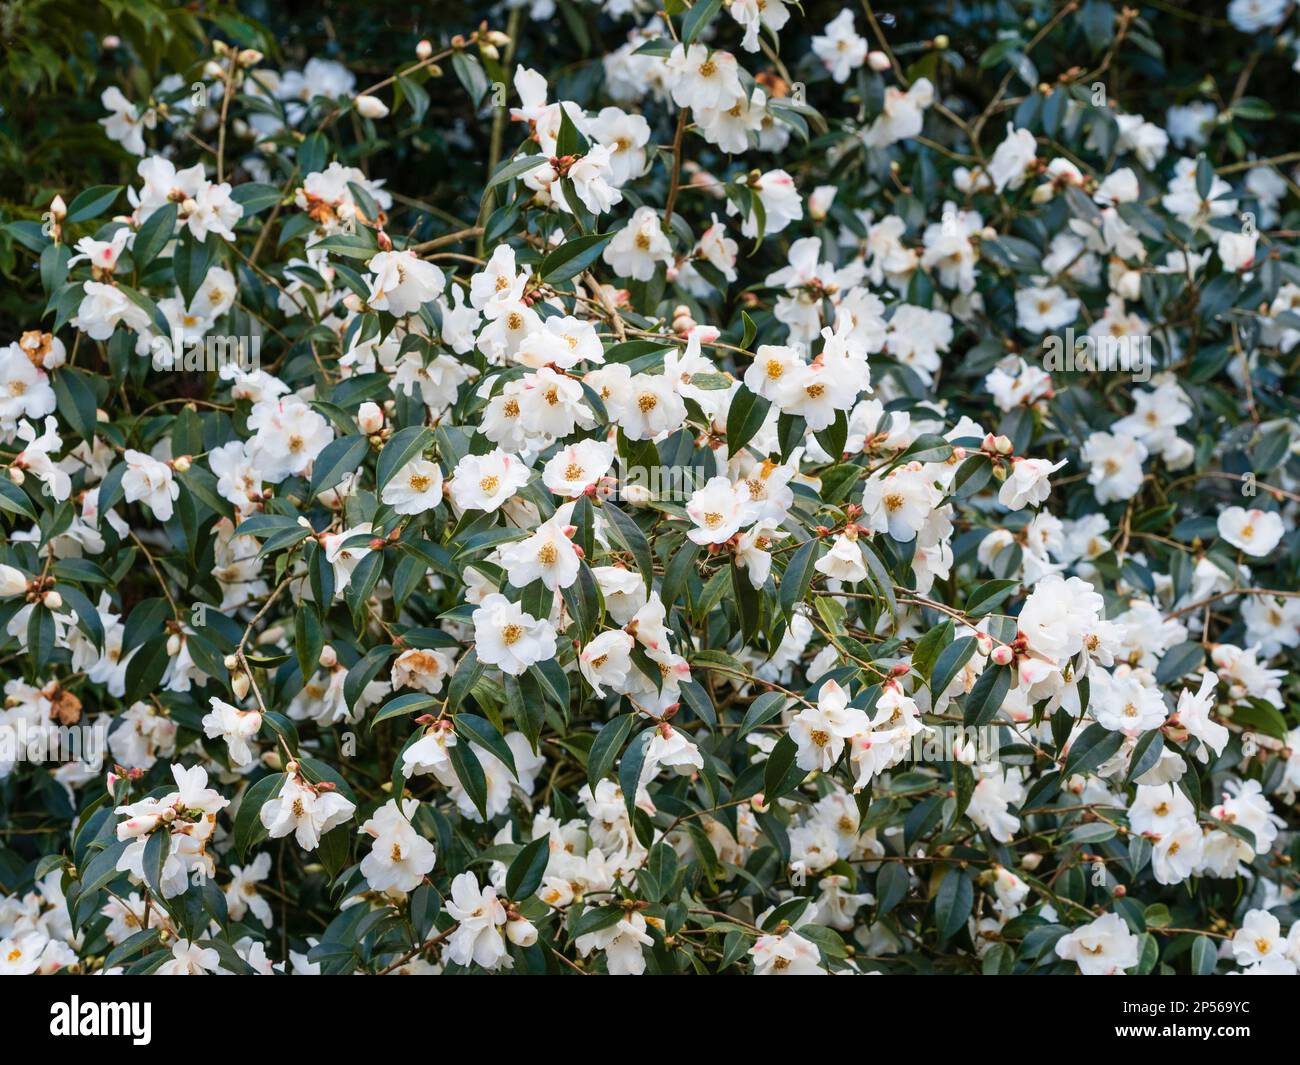 Fiori bianchi massaggiati dell'arbusto ornamentale, da inverno a primavera arbusto sempreverde, Camellia cuspidata x saluenensis 'neve di Cornovaglia' Foto Stock